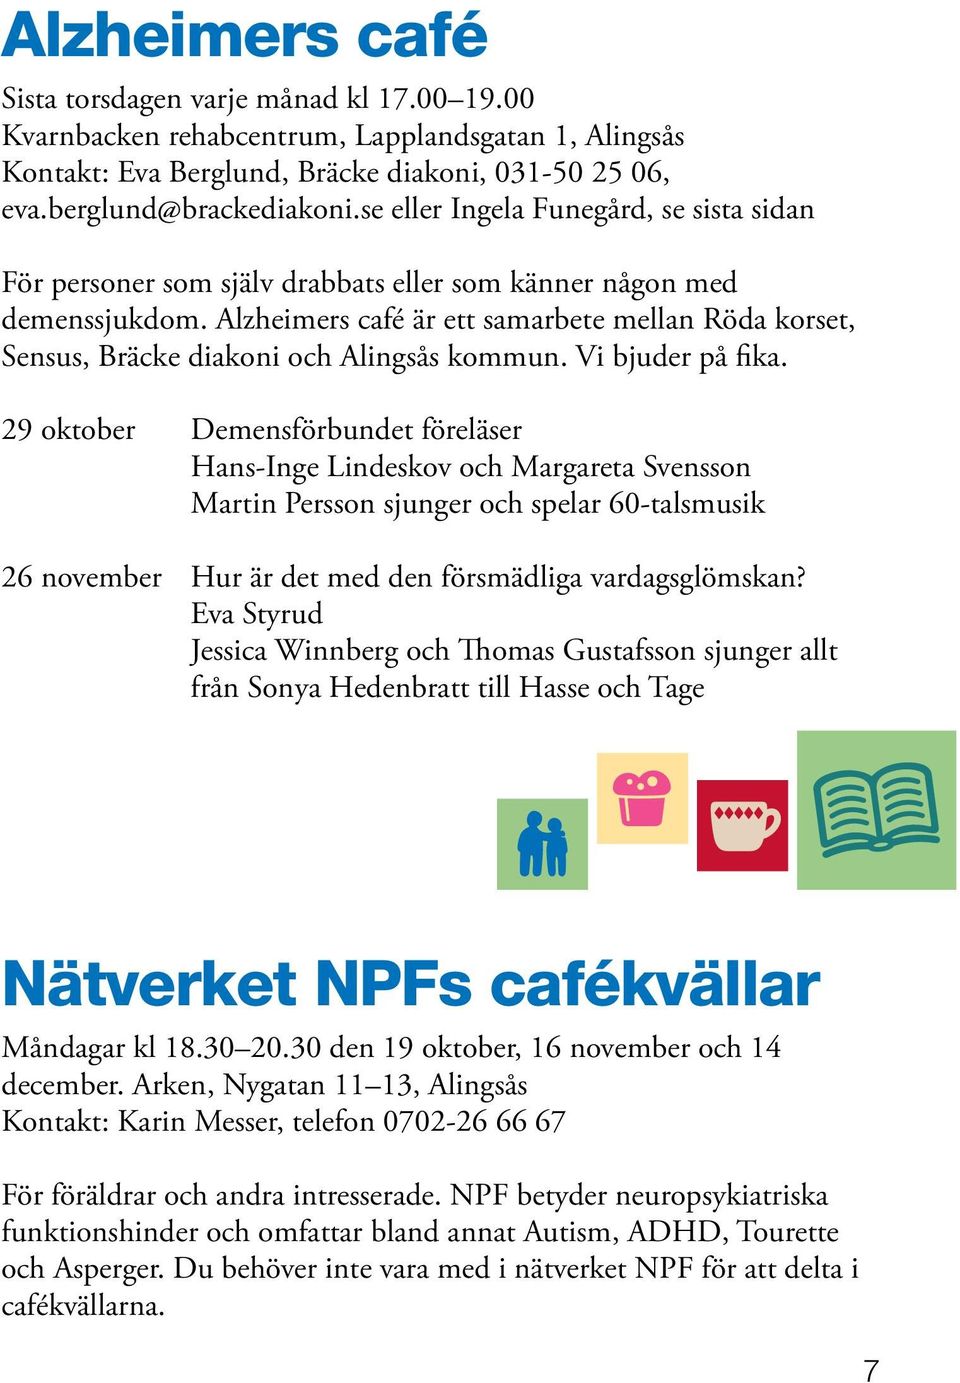 Alzheimers café är ett samarbete mellan Röda korset, Sensus, Bräcke diakoni och Alingsås kommun. Vi bjuder på fika.